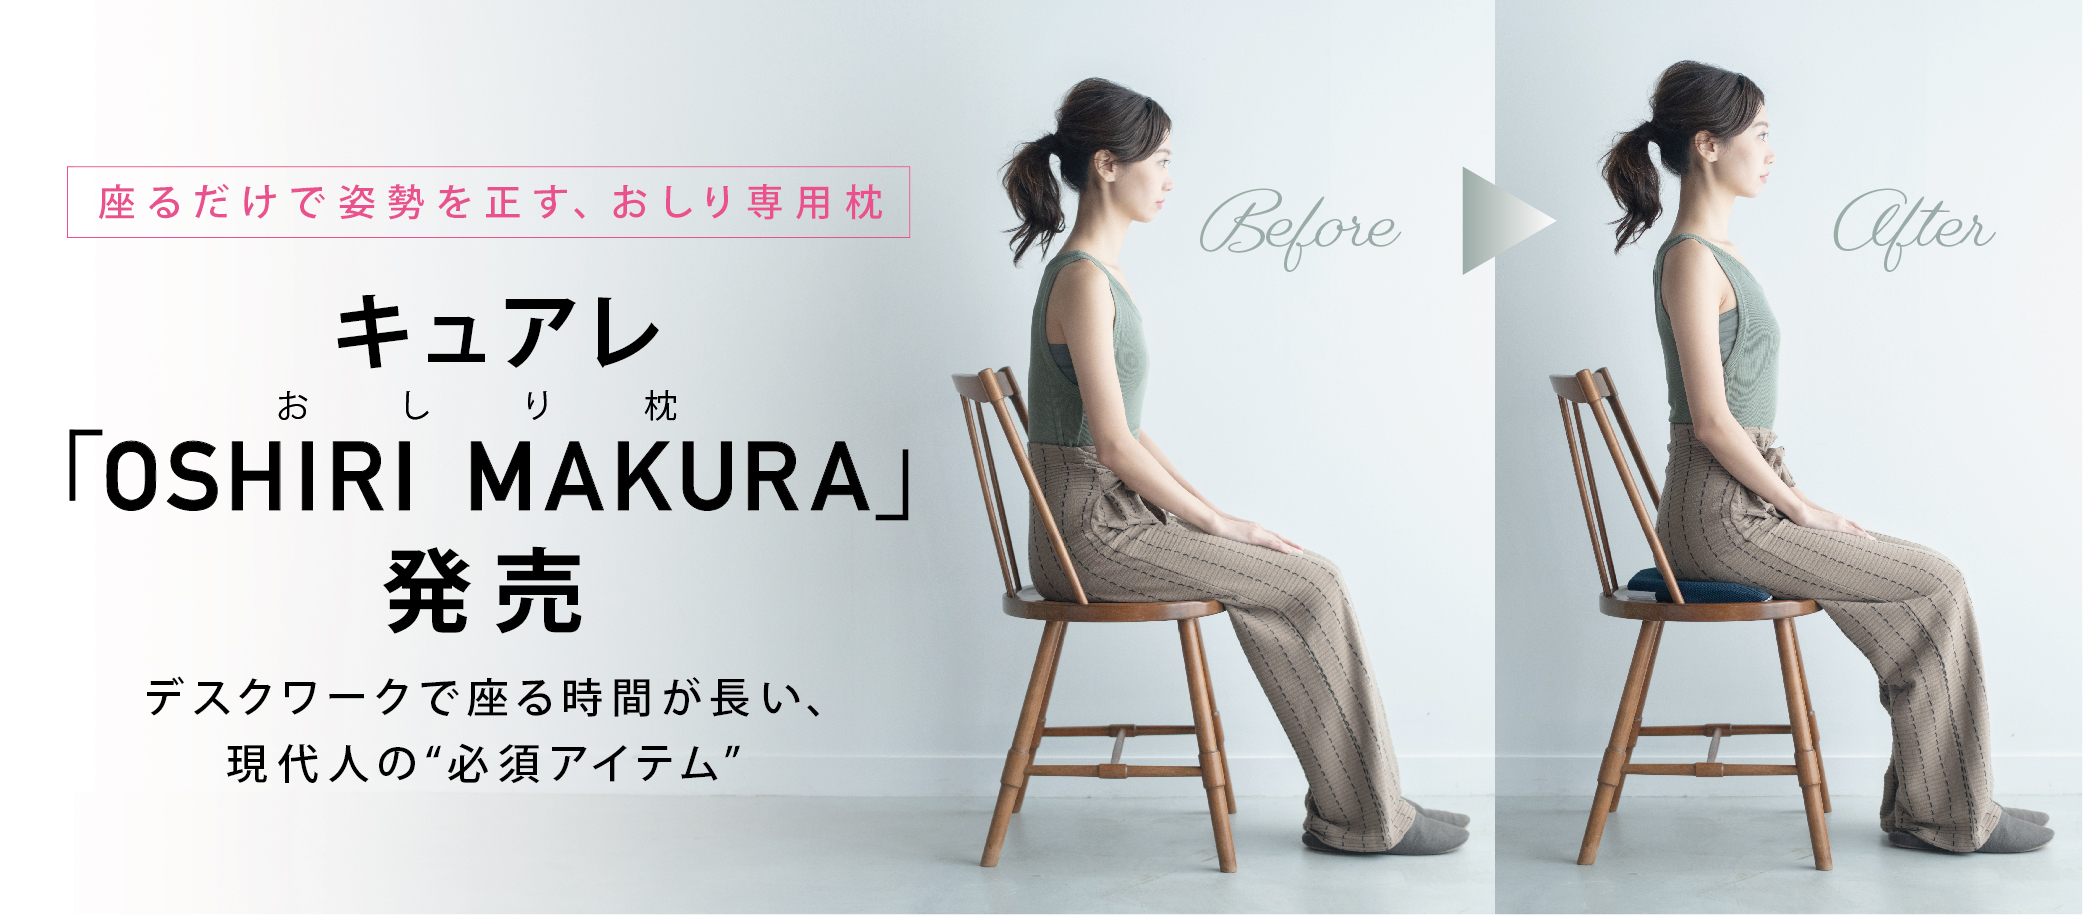 キュアレ 座るだけで姿勢を正す おしり専用枕 Oshiri Makura 発売 株式会社クワトロハートのプレスリリース